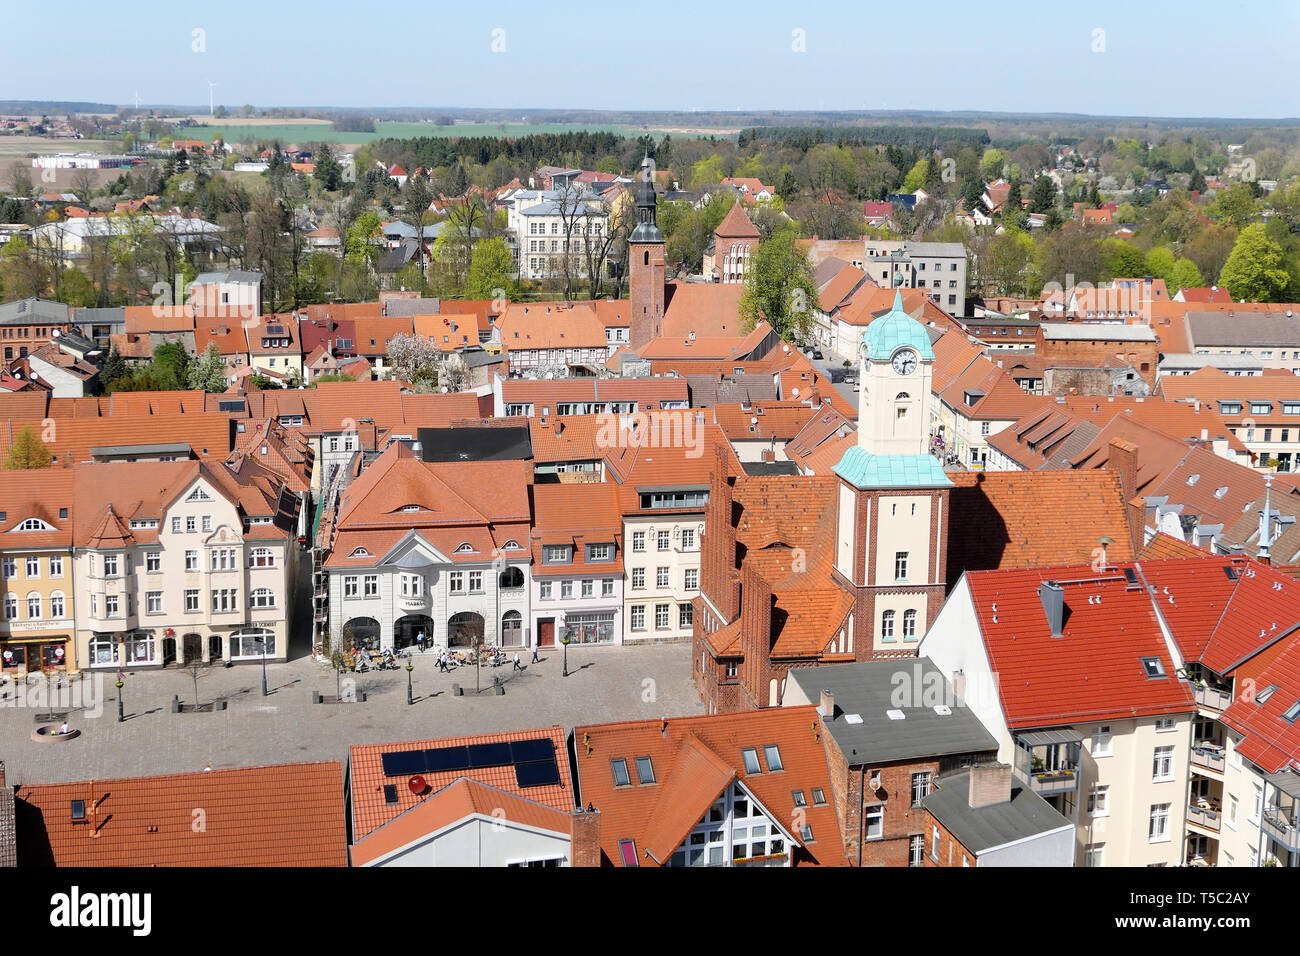 Wittstock, Brandenburg/Deutschland vom 21. April 2019: Stadtbild der Stadt Wittstock in Deutschland. Blick über die Stadt mit ihren kleinen Geschäften und Menschen Wal Stockfoto